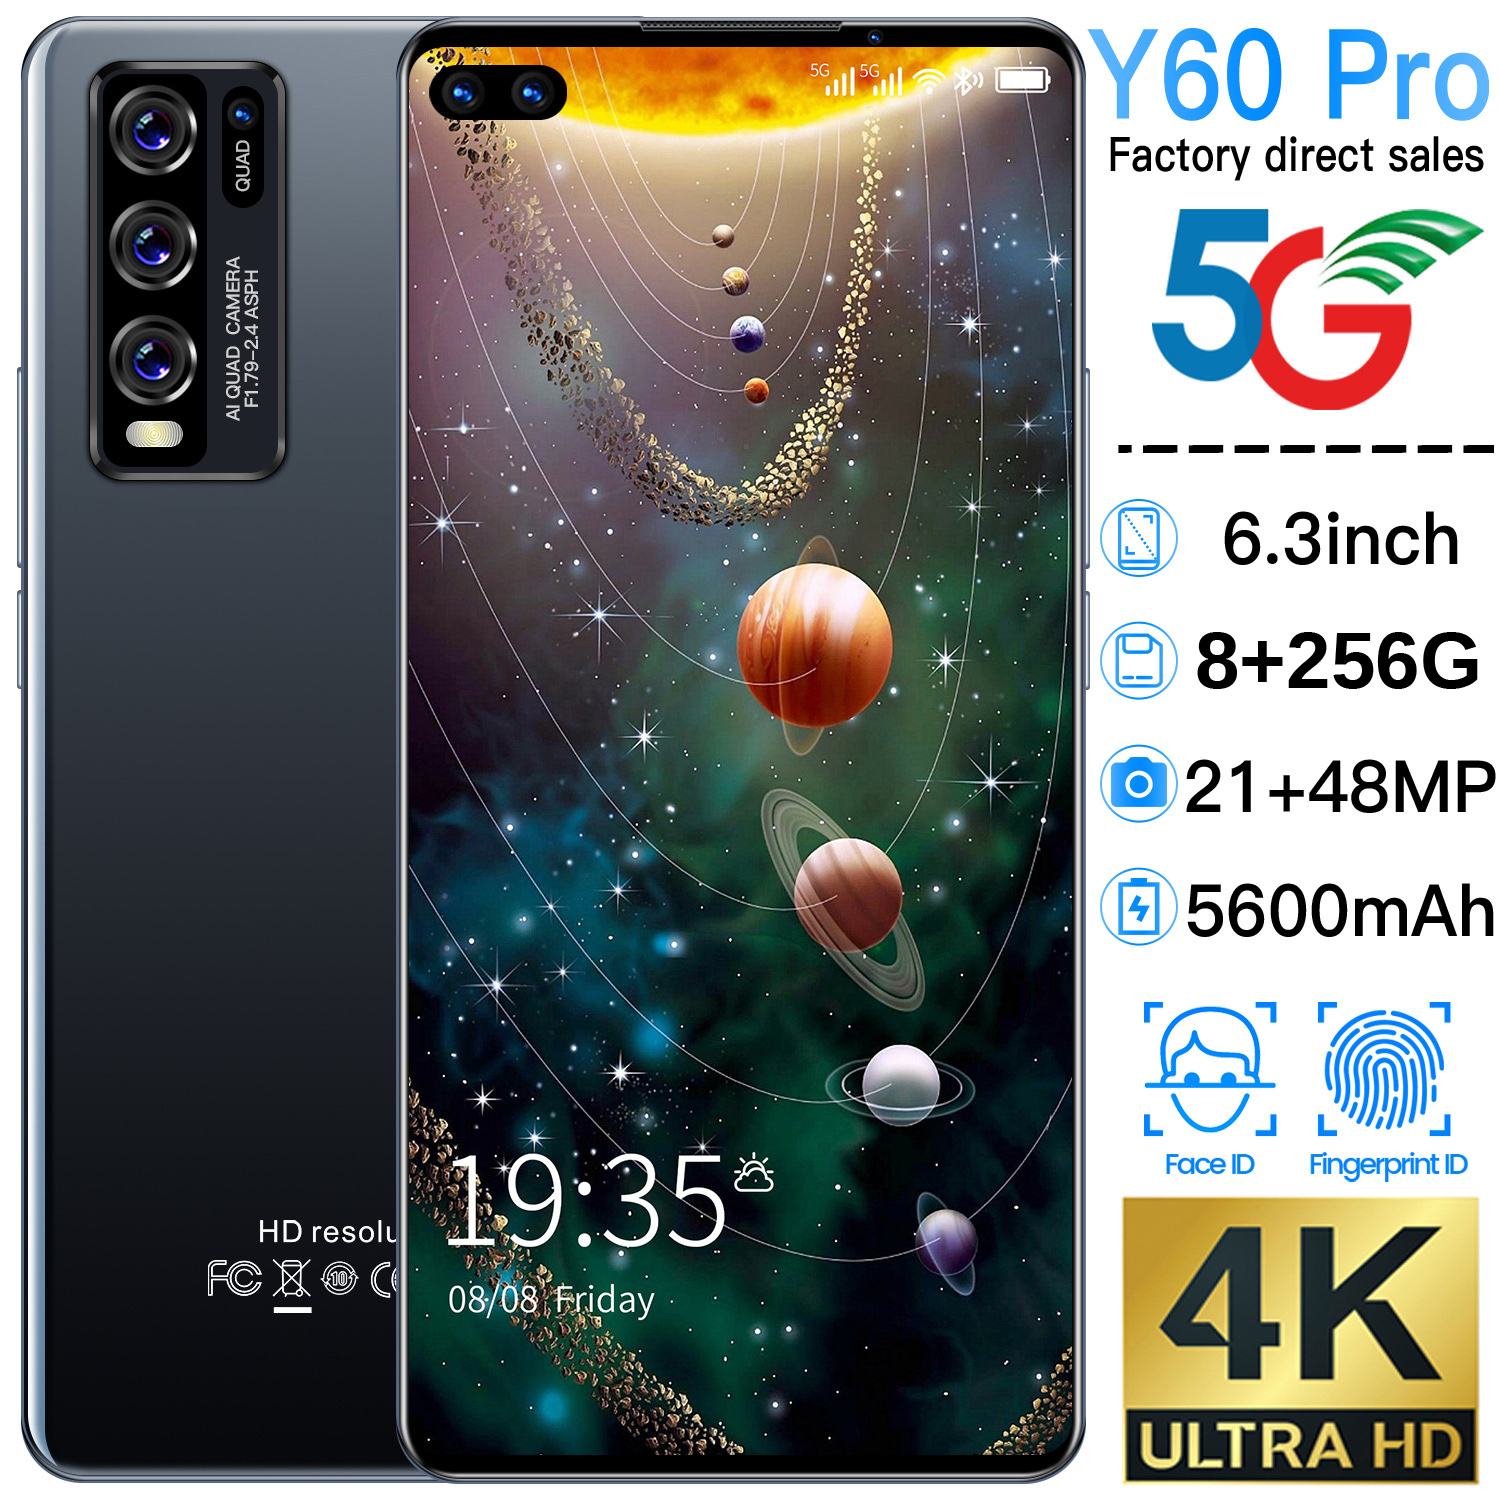 Hauwei Y60 Pro สมาร์ทโฟนโทรศัพท์ราคาถูก 6.3 นิ้วโทรศัพท์มือถือ 128GB / 256GB 5600mAh แบตเตอรี่ขนาดใหญ่ Android  โทรศัพท์มือถือ5g wifi